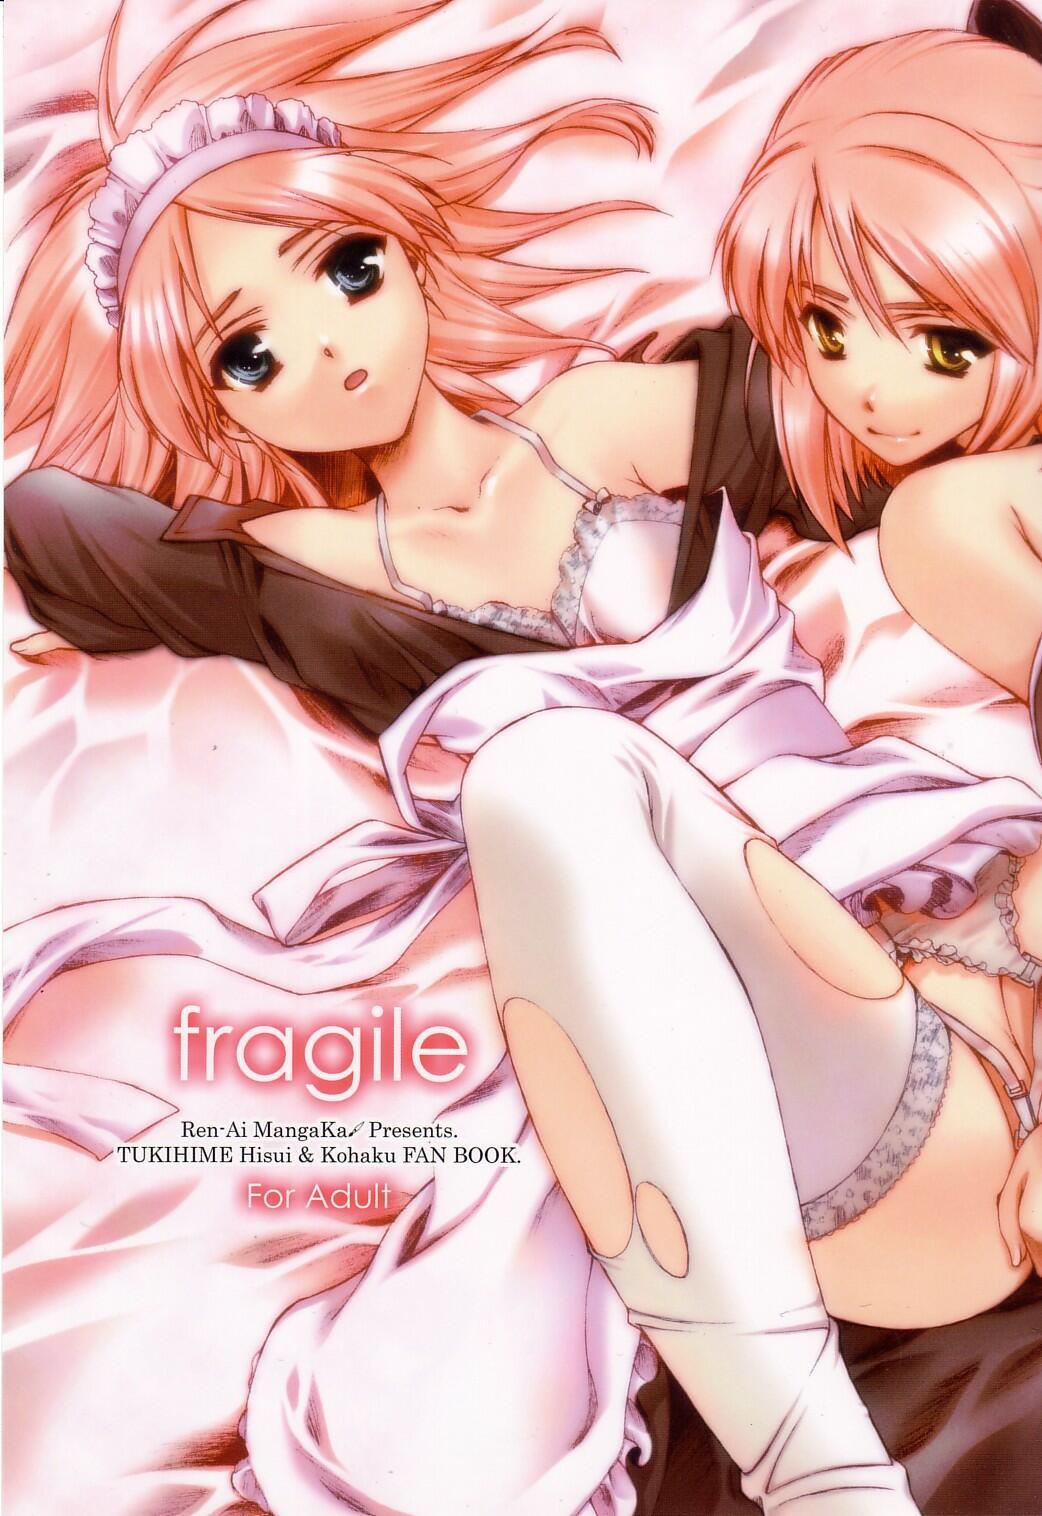 fragile 0